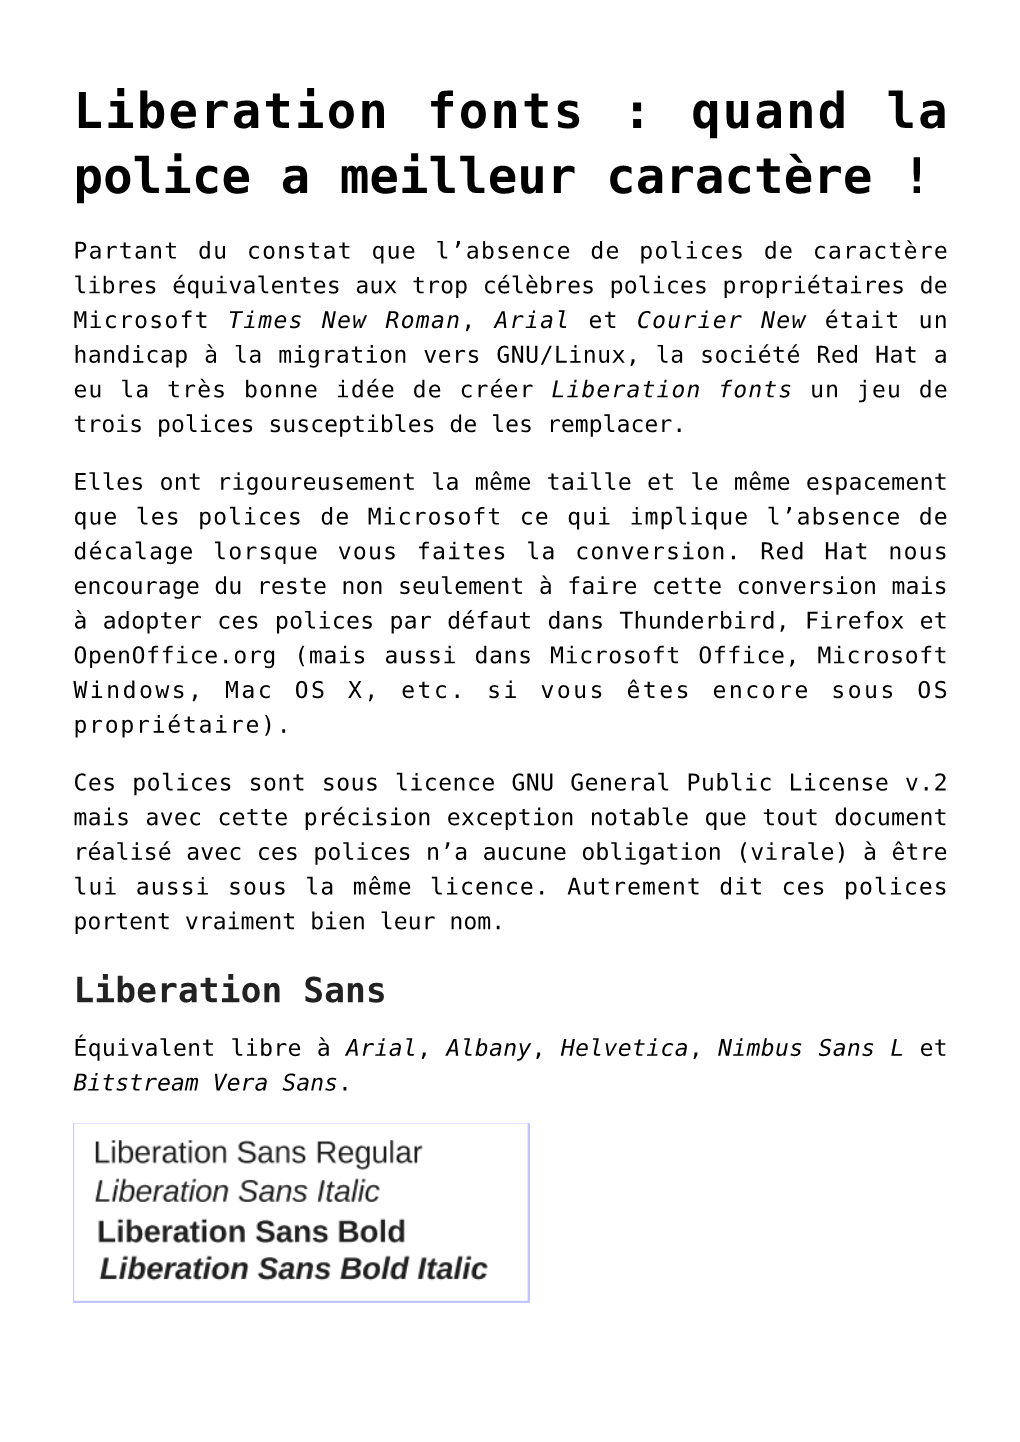 Liberation Fonts&#160;: Quand La Police a Meilleur